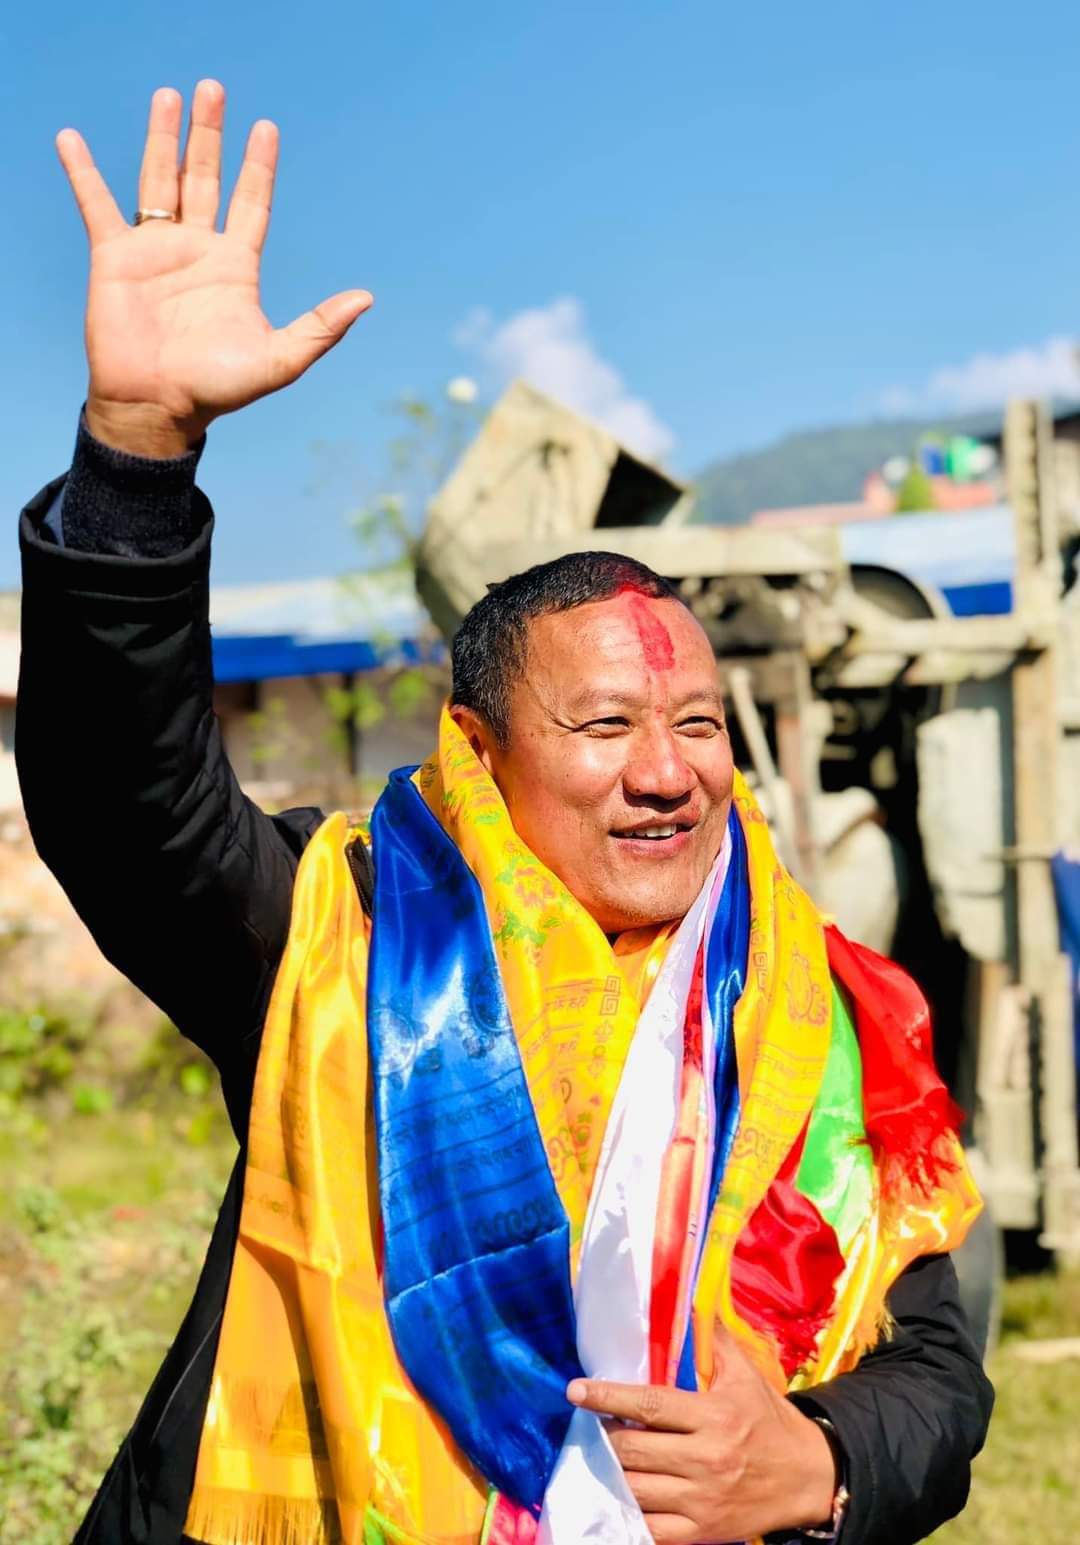 नेपाली काङ्ग्रेसको १४ औं महाअधिवेशन अन्तरगत जिल्ला अधिवेशनमा तिर्थ लामा प्यानल भारी मतले विजयी